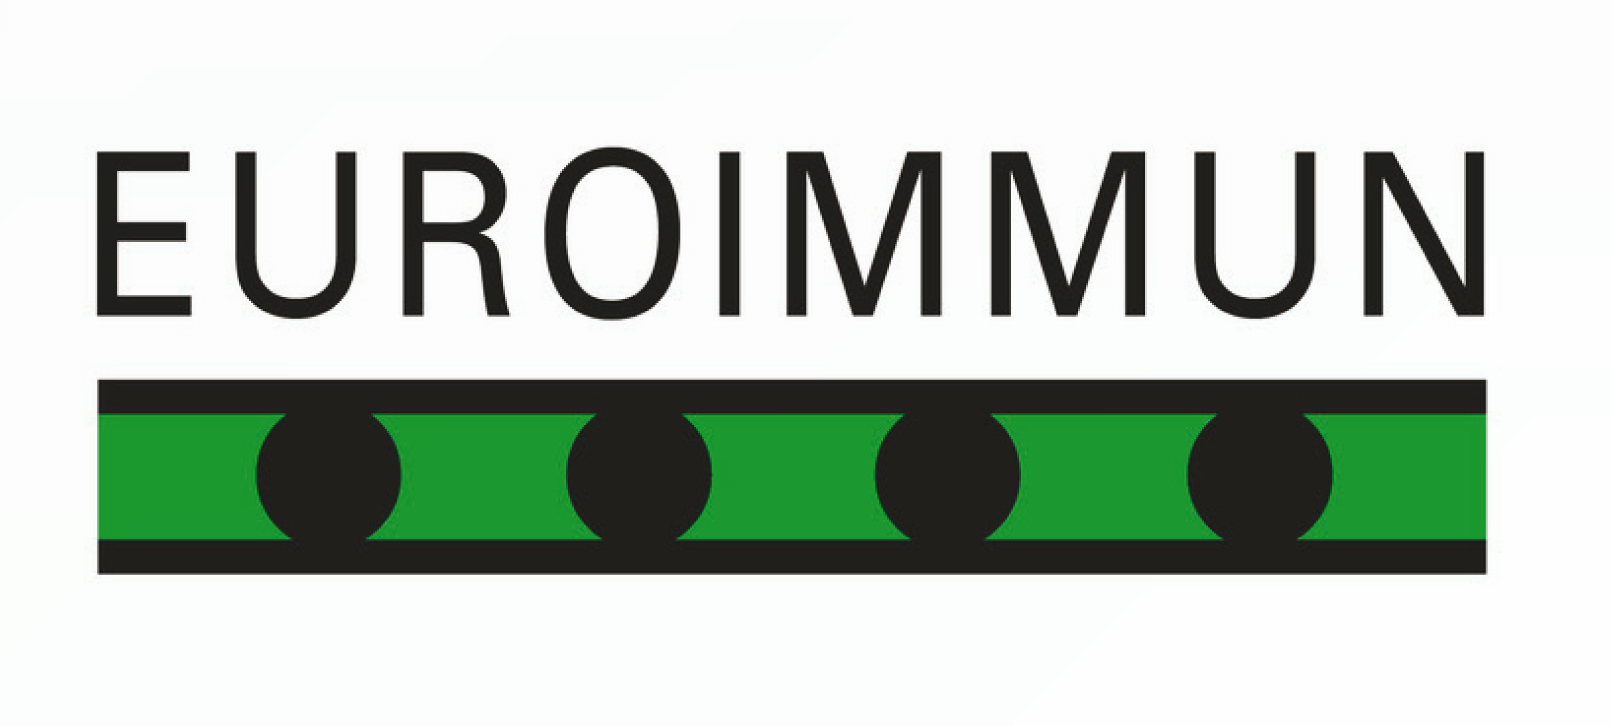 Euroimmun 2019